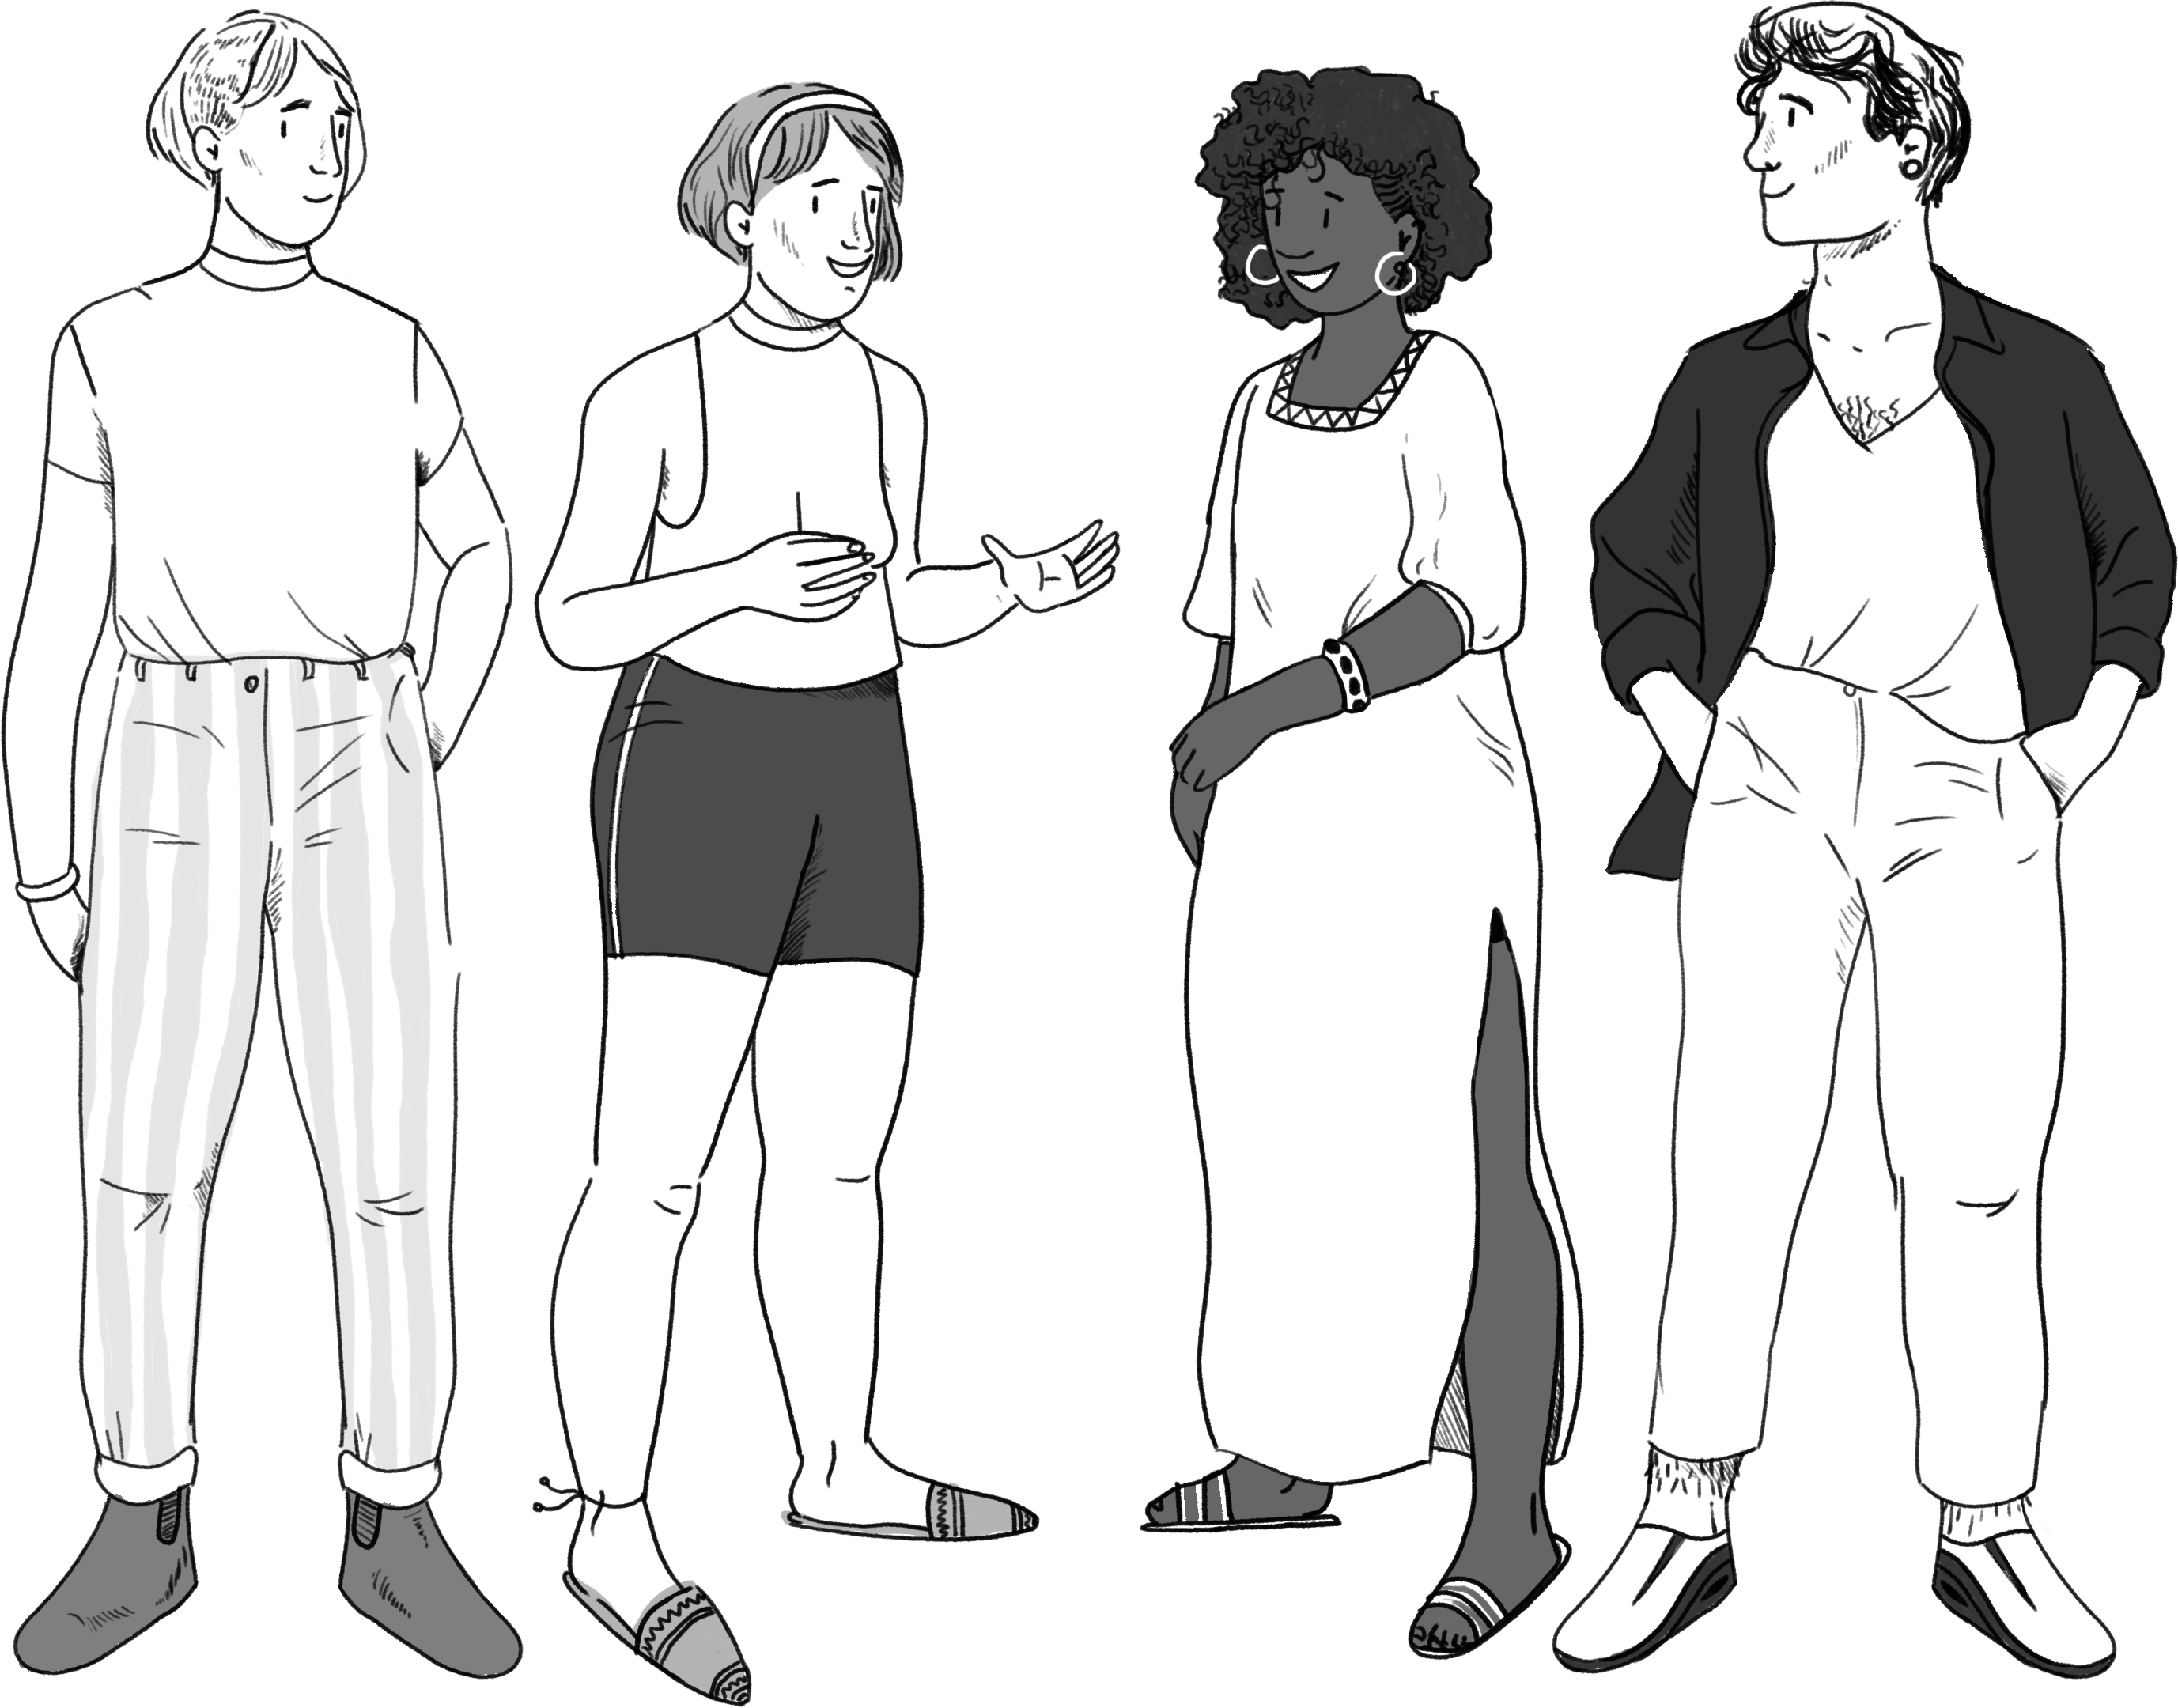 Illustratie: vier jongeren staan naast elkaar. Ze gaan met elkaar in dialoog en delen hun mening.